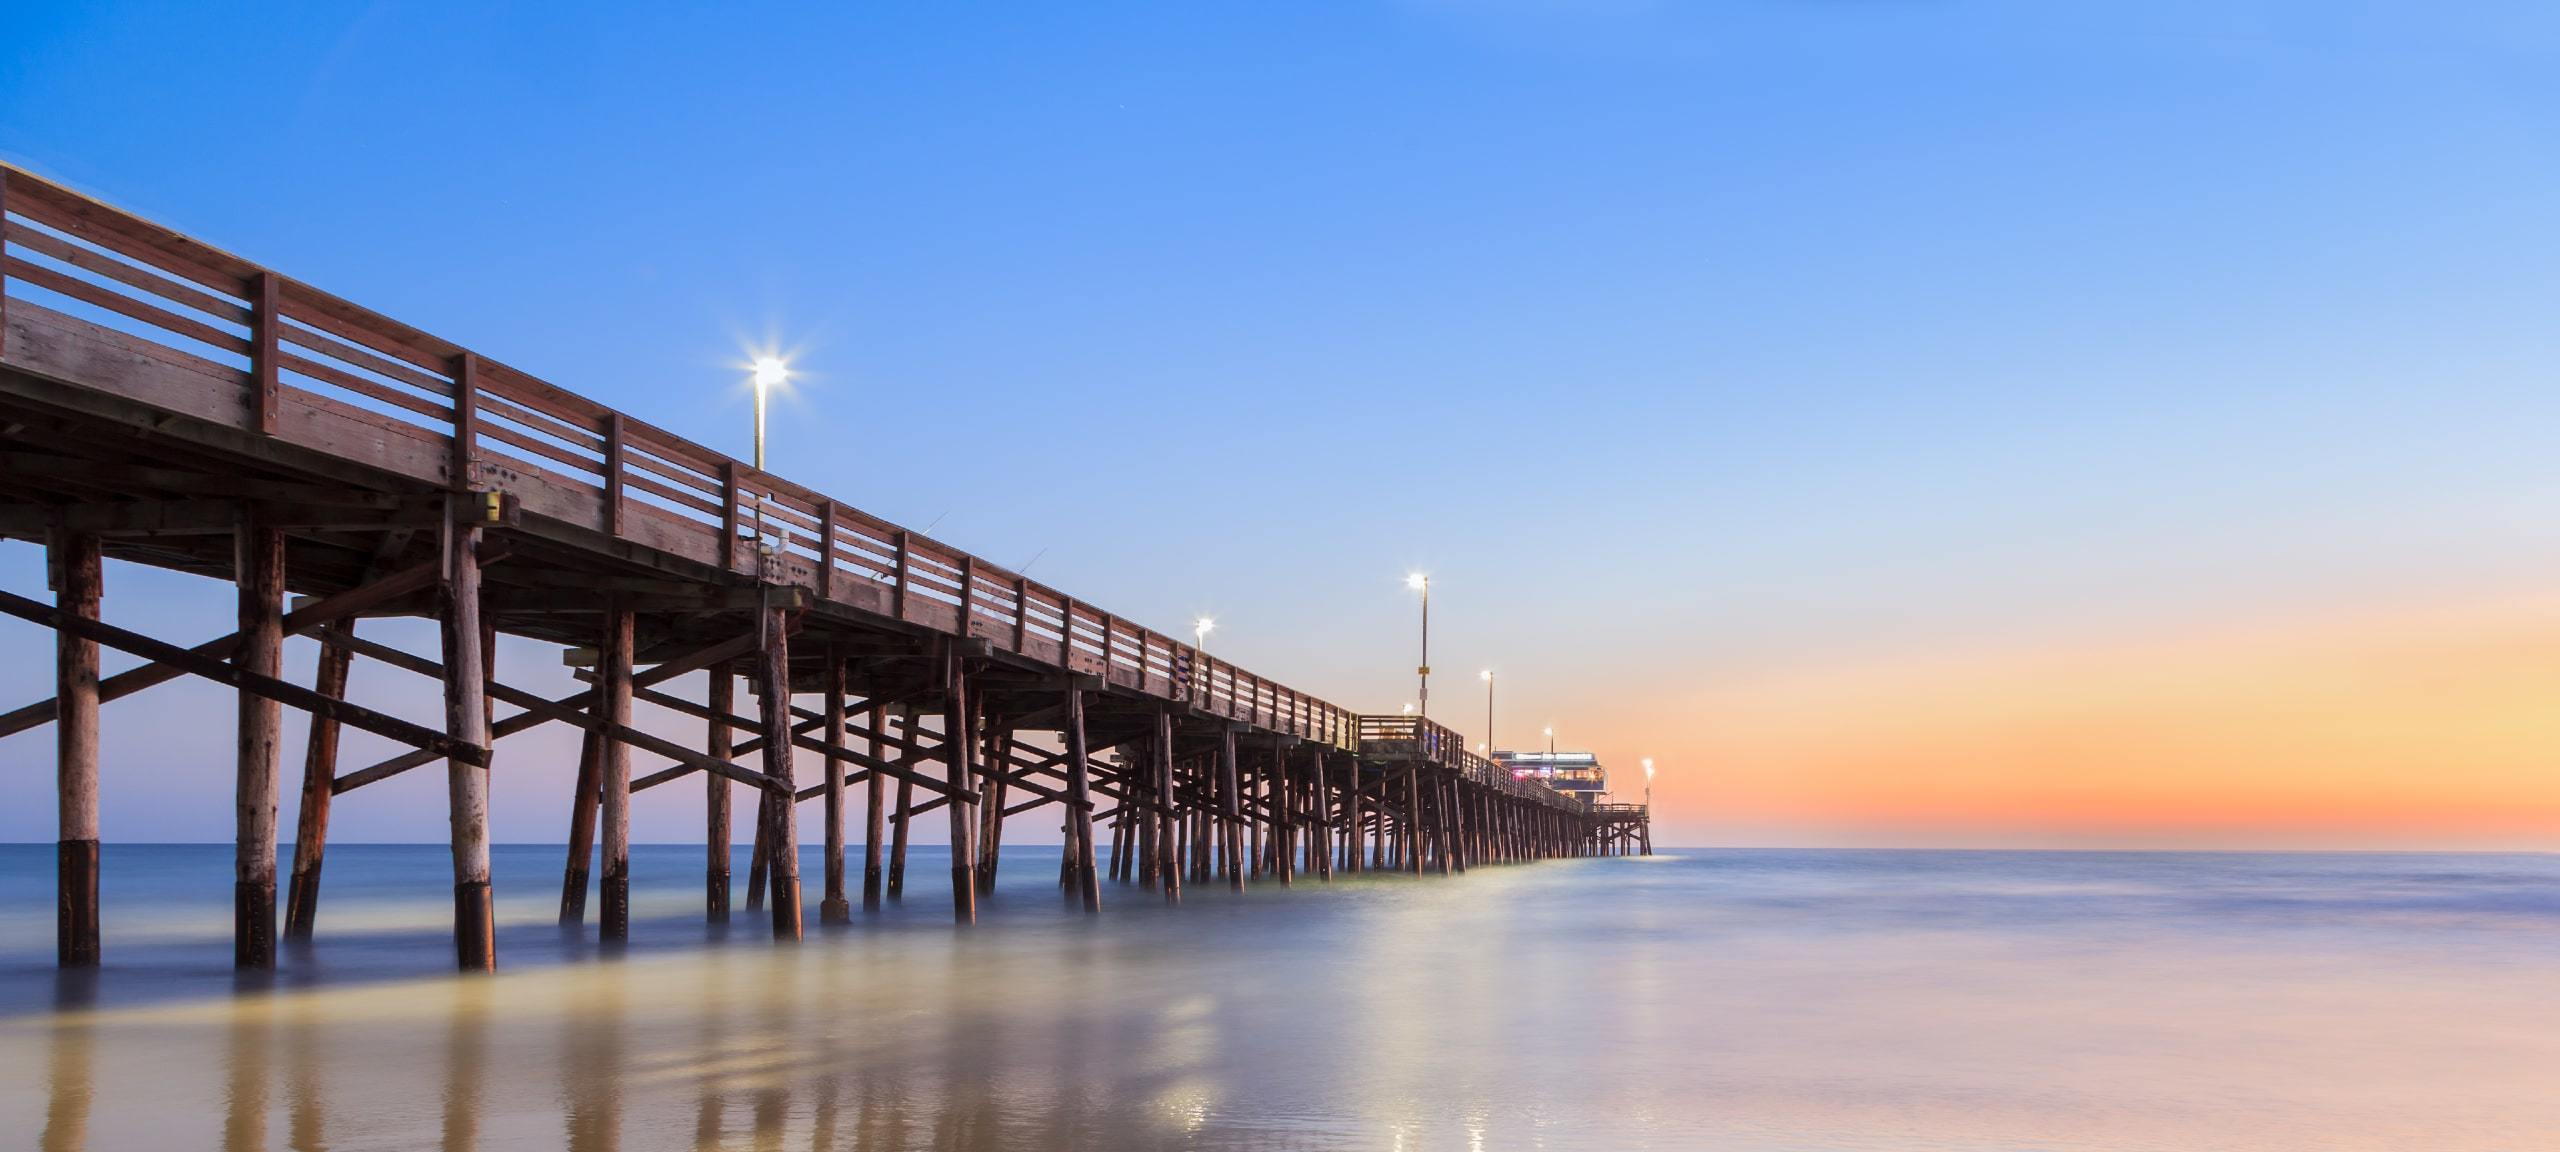 Sunset view of beach and Balboa Pier in Newport Beach